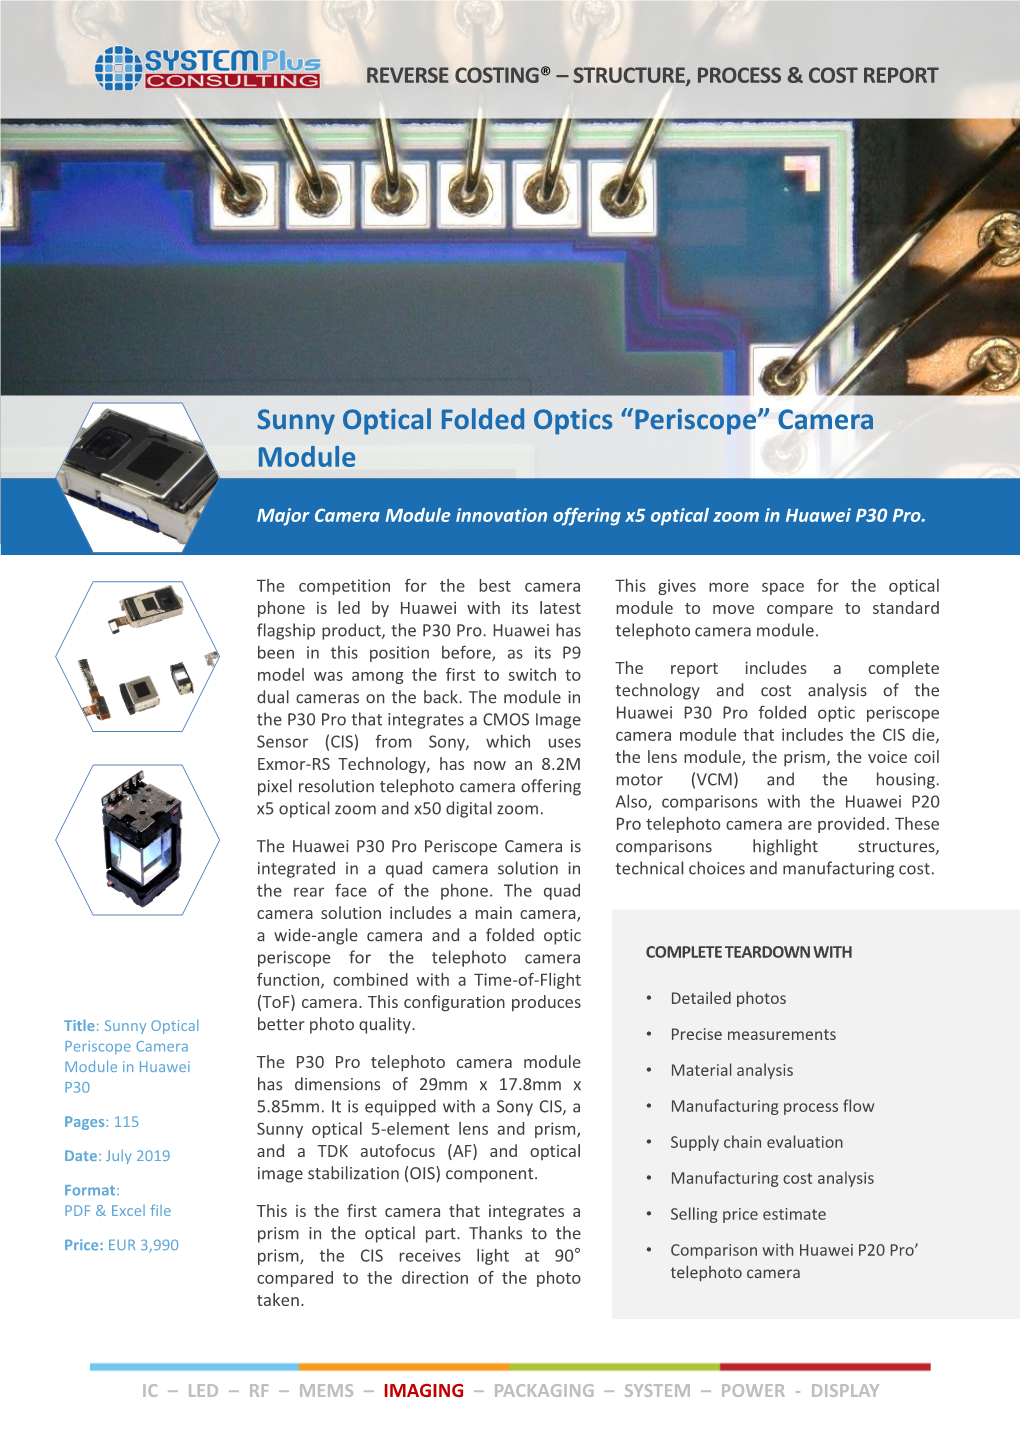 Sunny Optical Folded Optics “Periscope” Camera Module